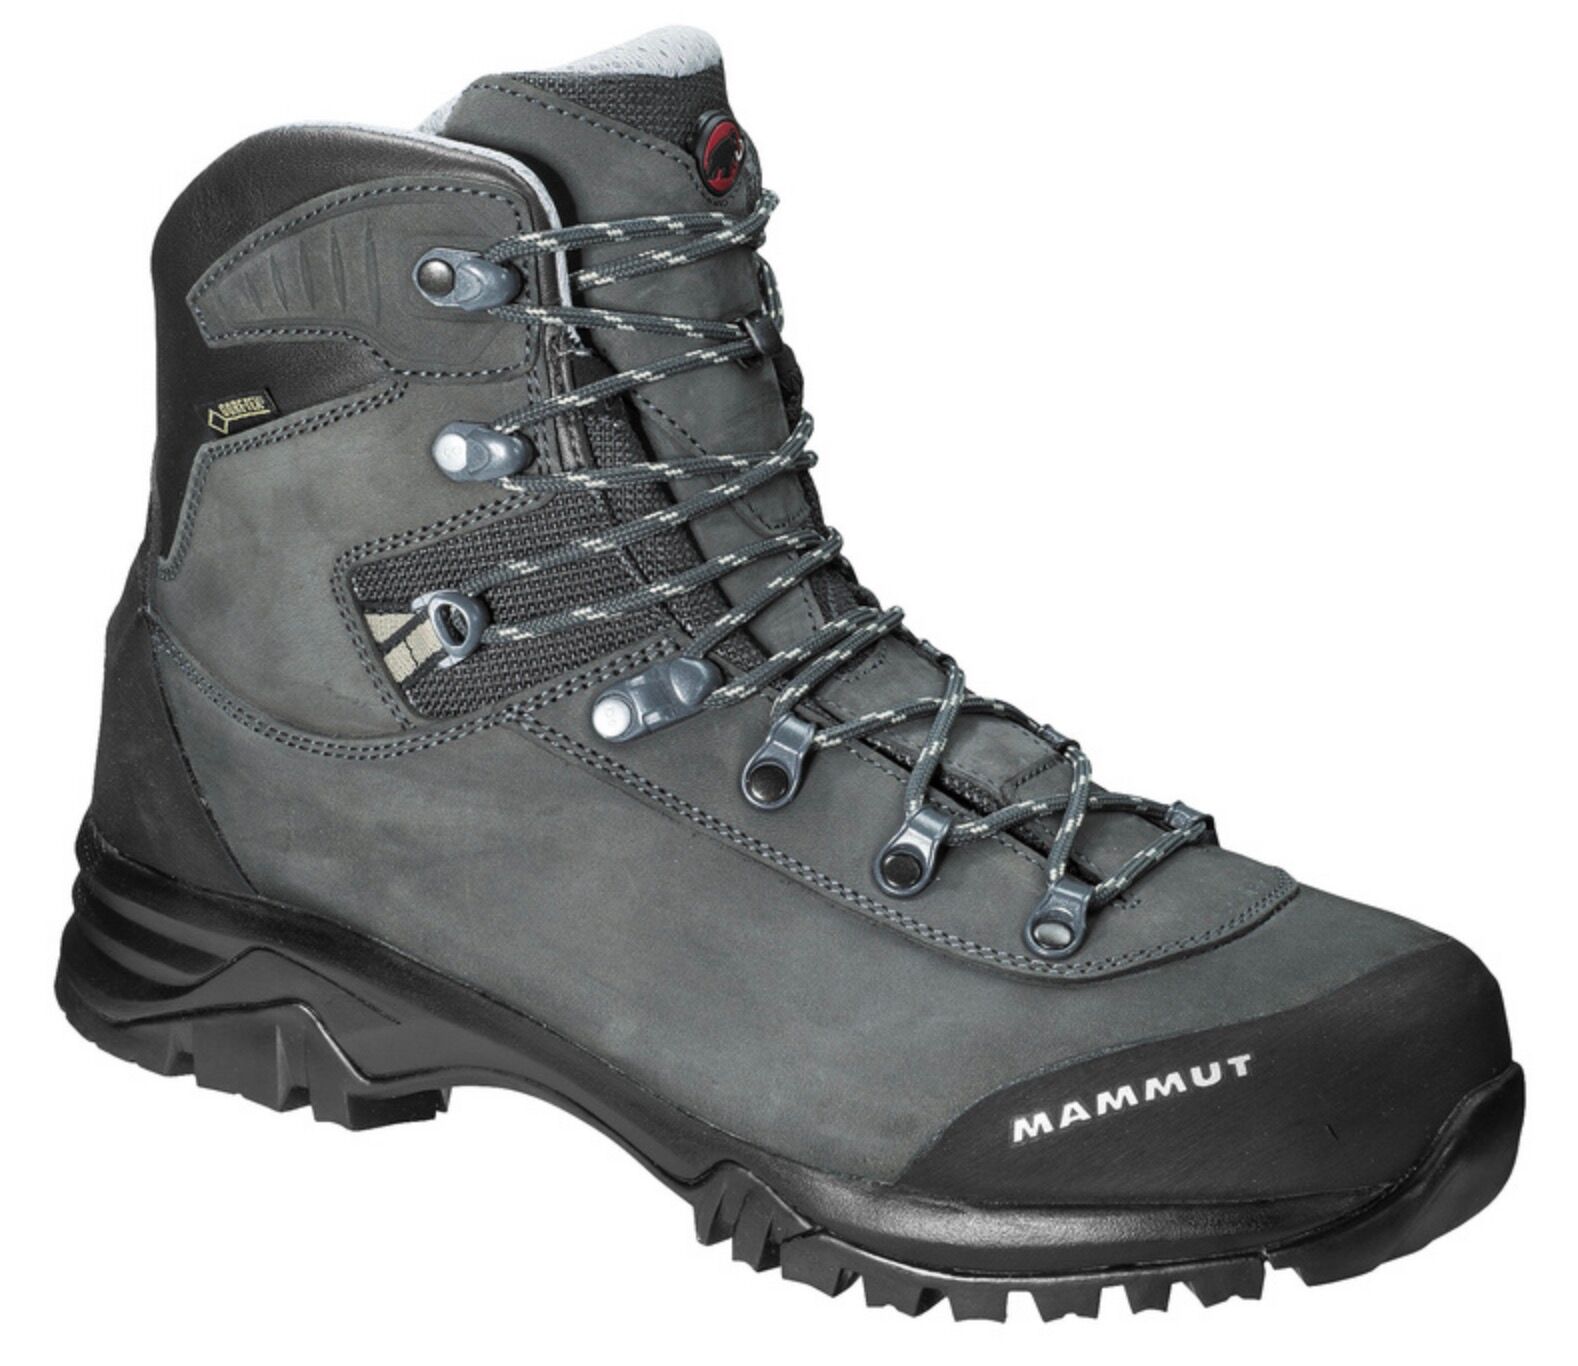 Mammut - Trovat Advanced High GTX® Men - Hiking boots - Men's